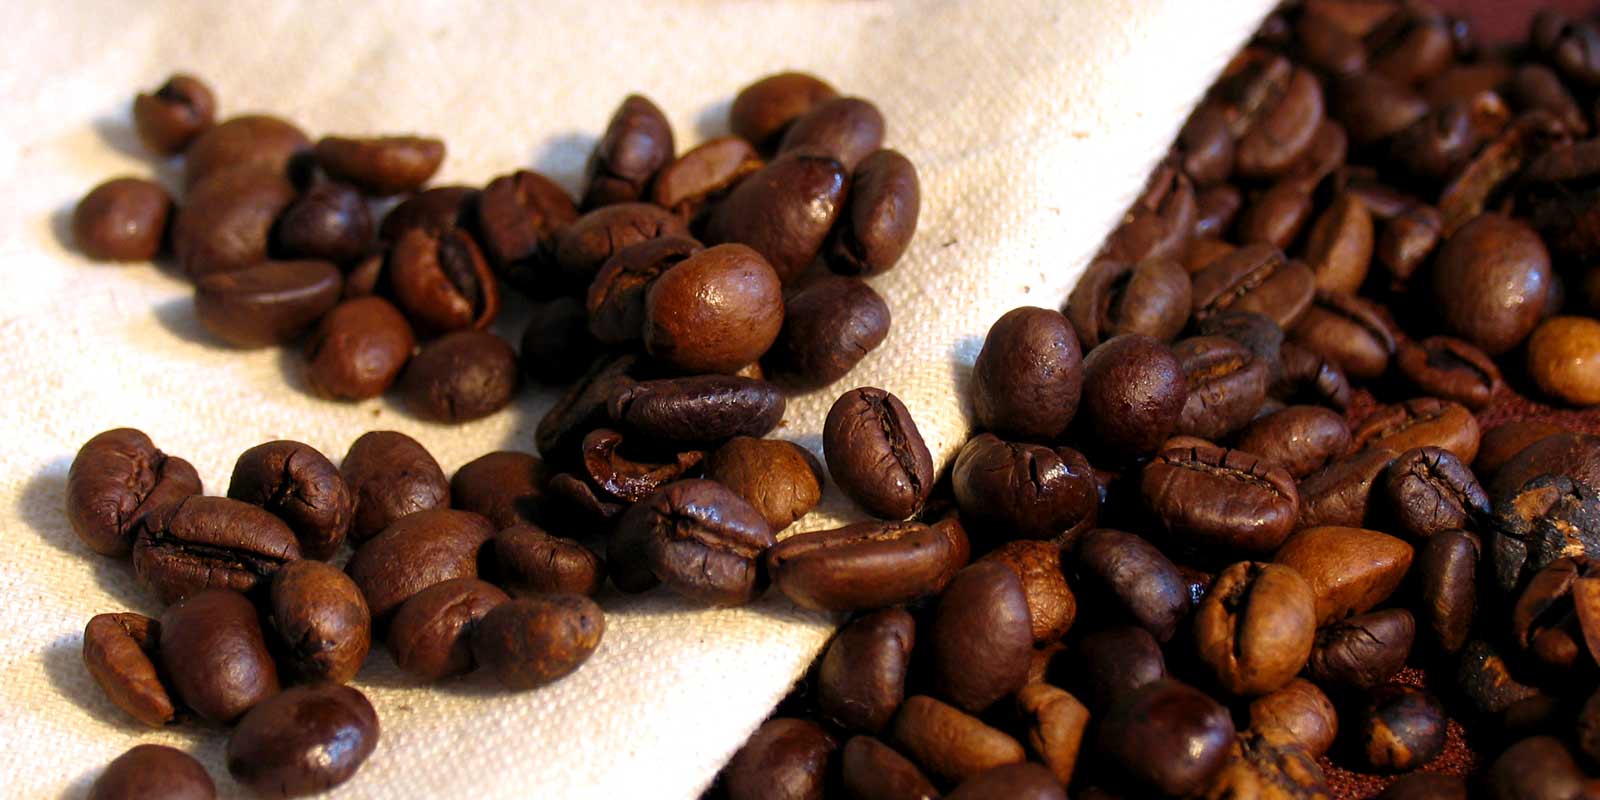 Kaffi/espresso Her finnur thu mismunandi kaffitegundir af serstakri gerdh.